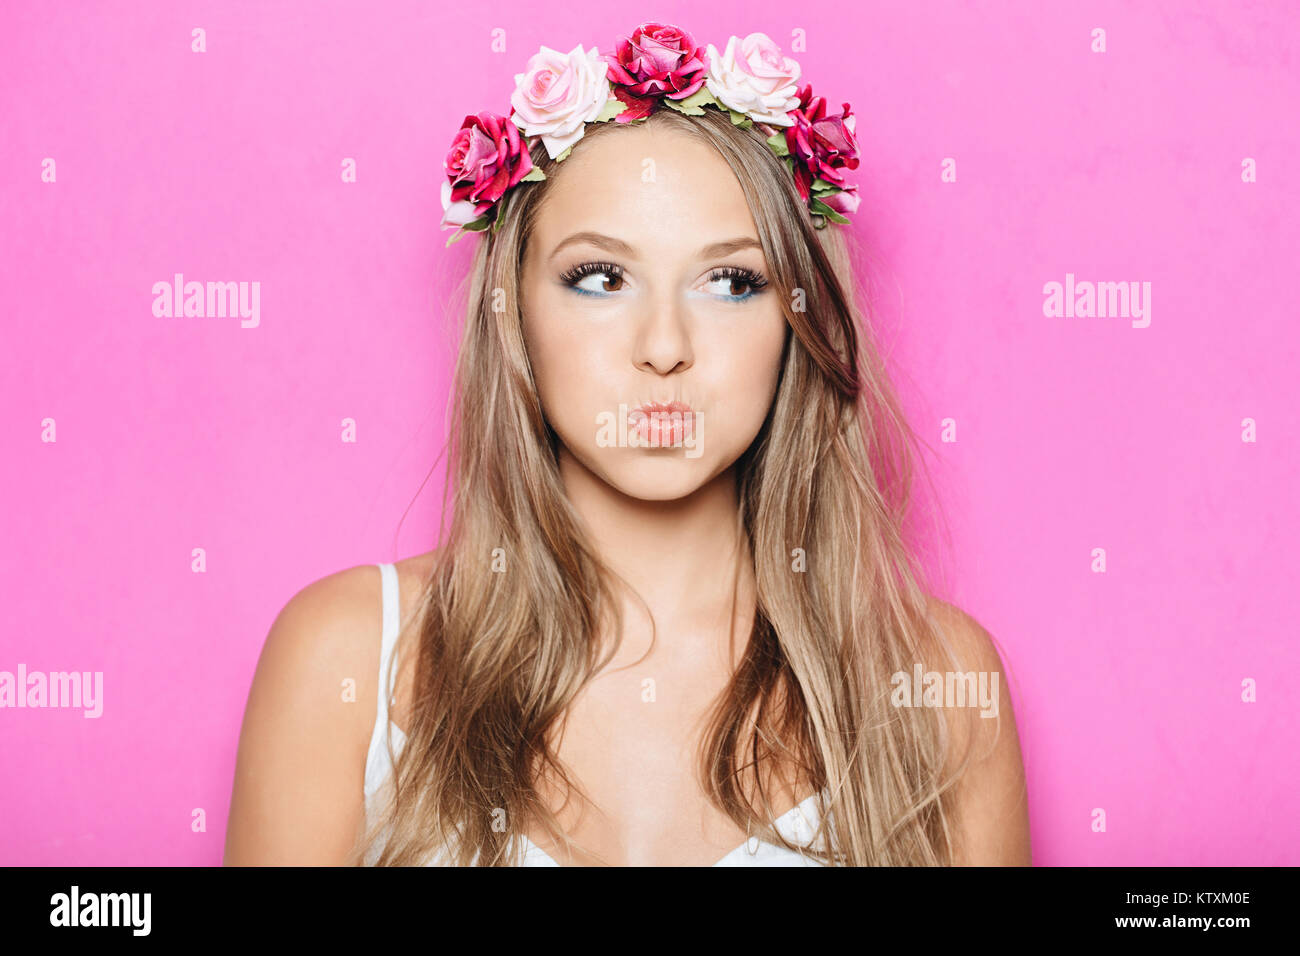 Lustig, hübsches Mädchen, Puffing ihre Wangen gegen Studio rosa Hintergrund. Headshot der charmante blonde junge Frau mit Blumen im Haar, die Münder whi Stockfoto